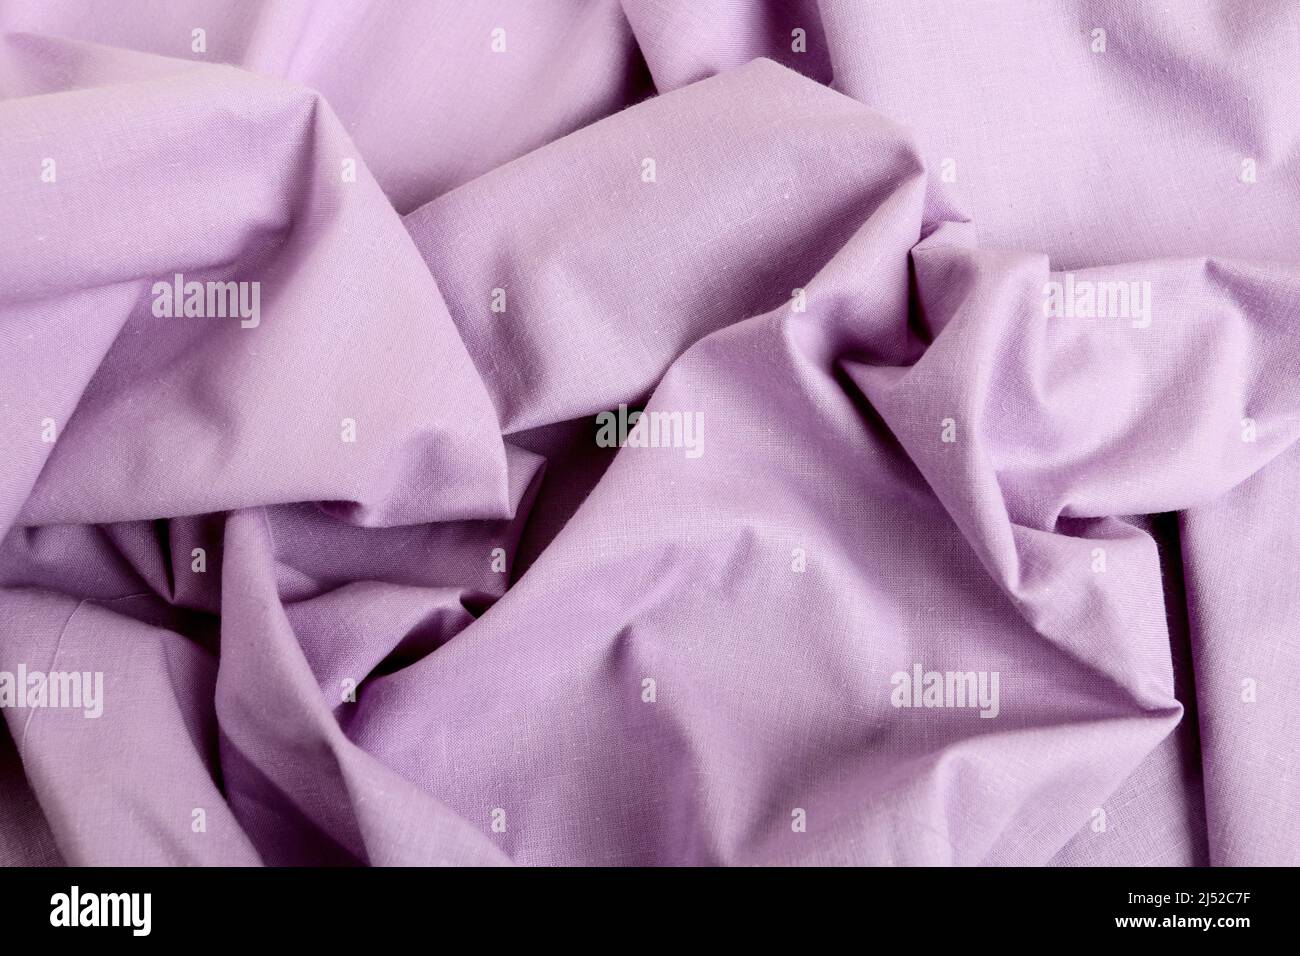 Tejido violeta suave - fondo ondulado. Recursos gráficos Foto de stock